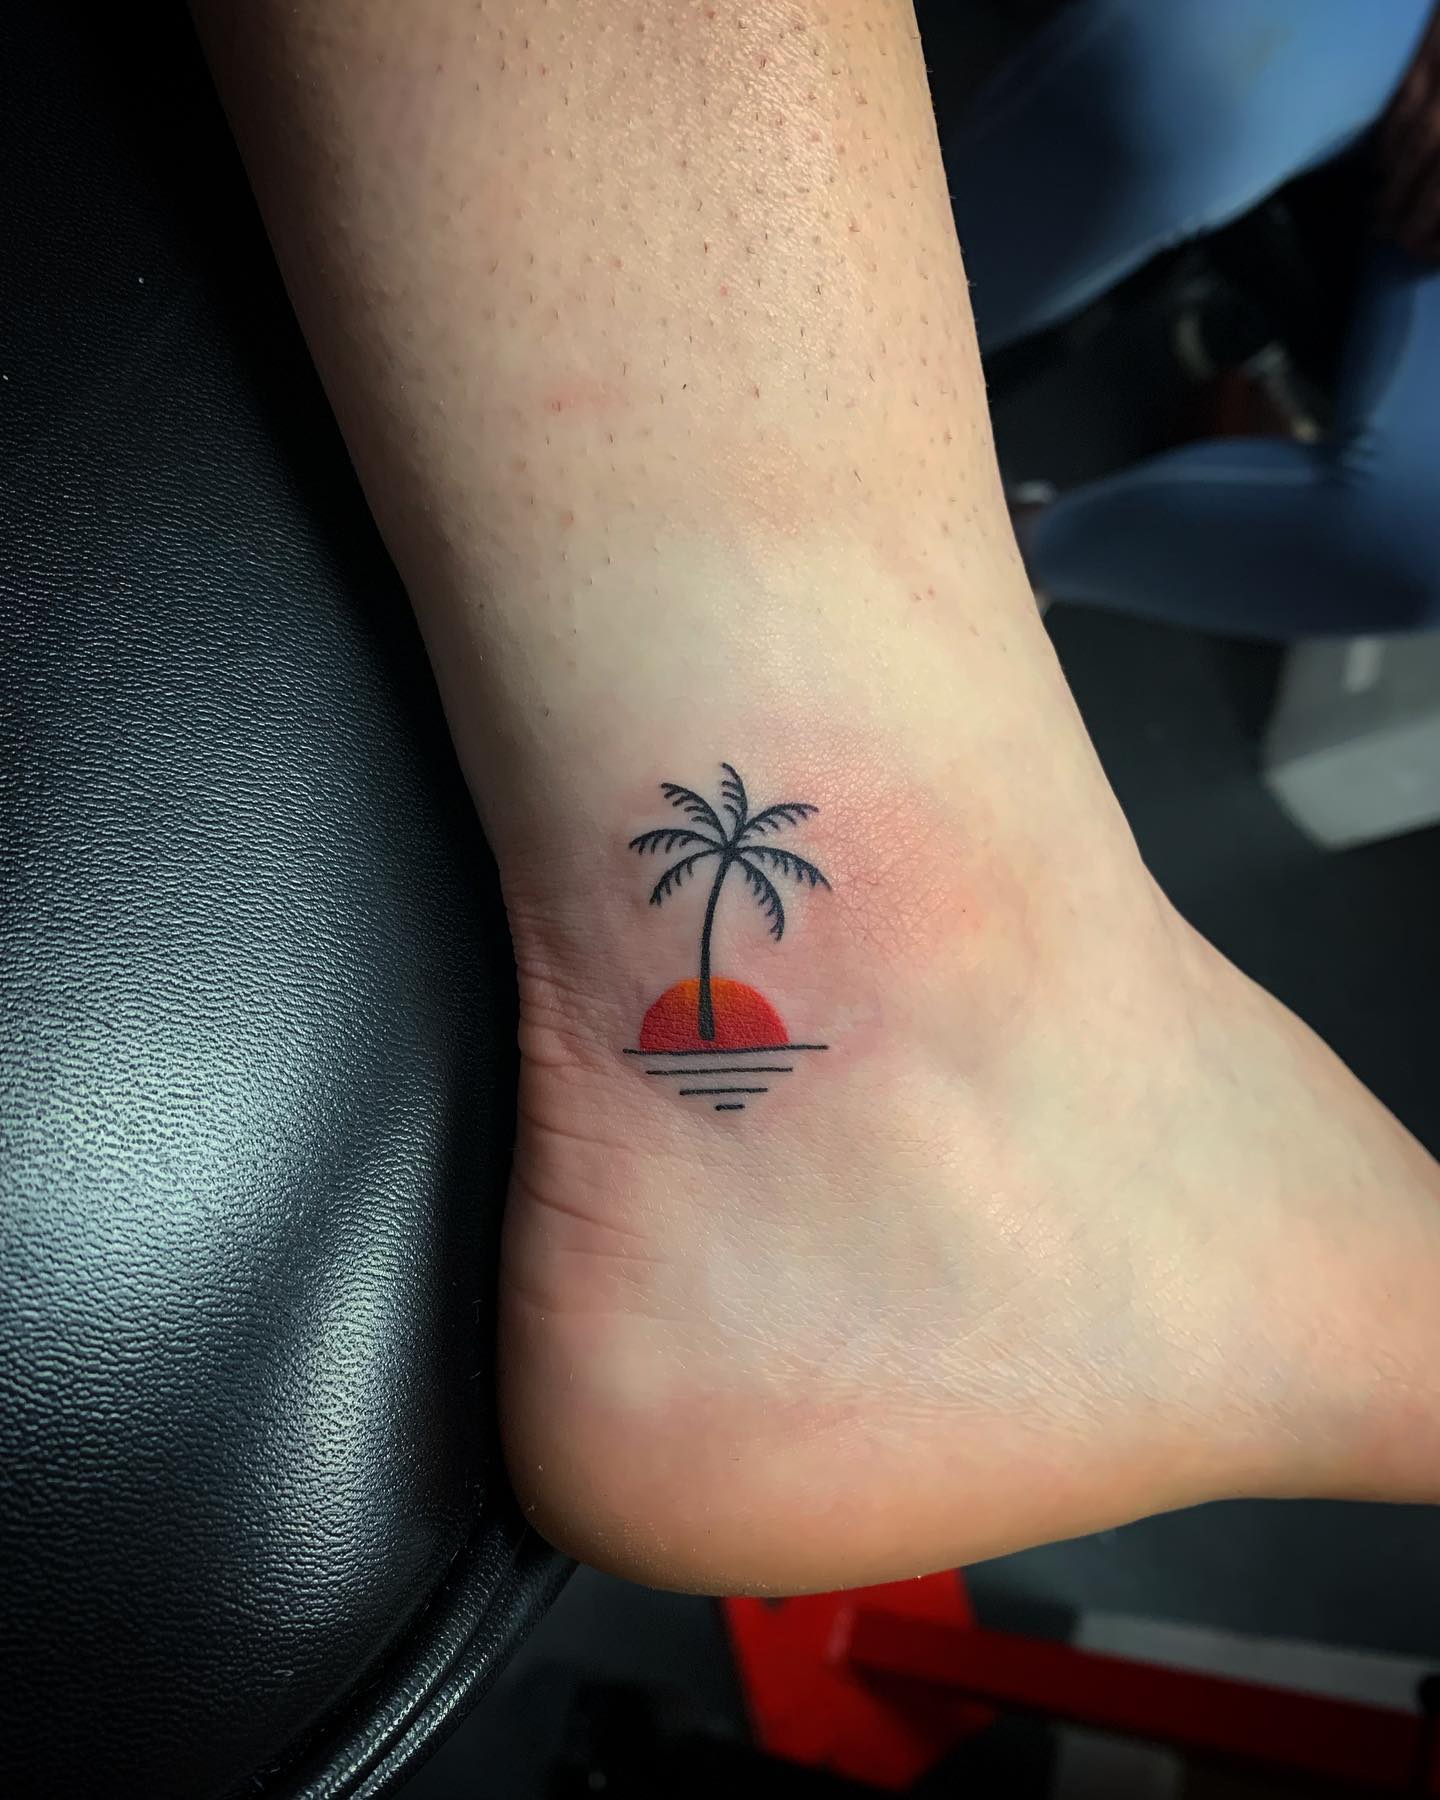 Tatuaje de palmera pequeña en el tobillo.